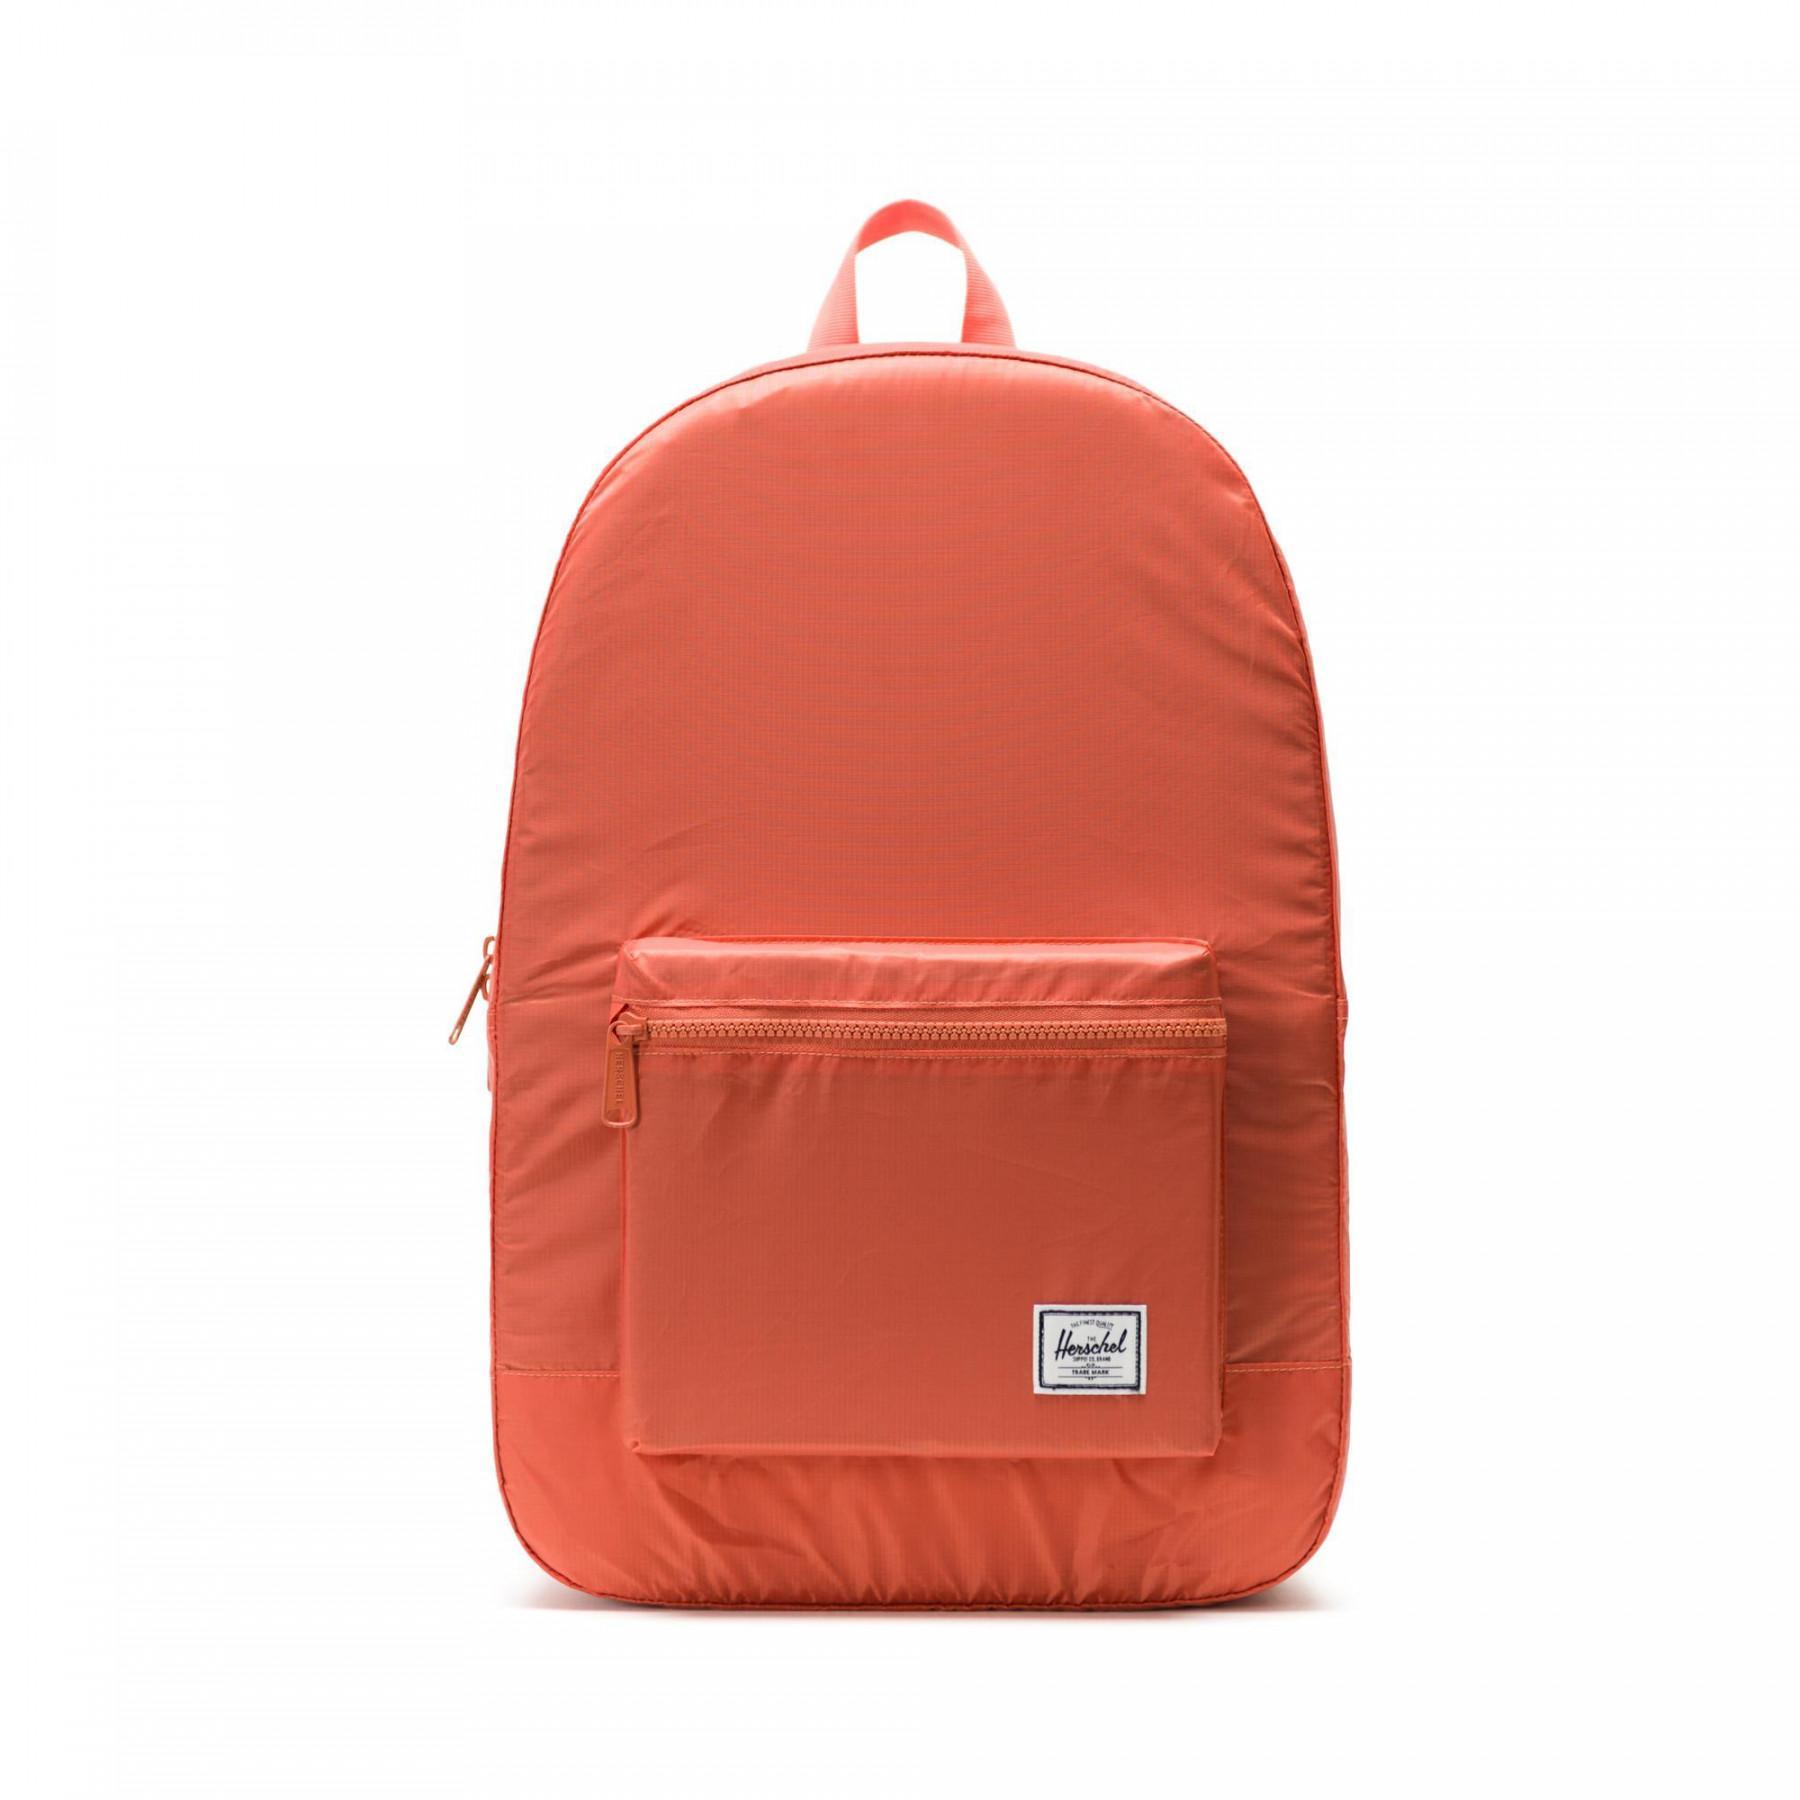 Plecak Herschel packable daypack